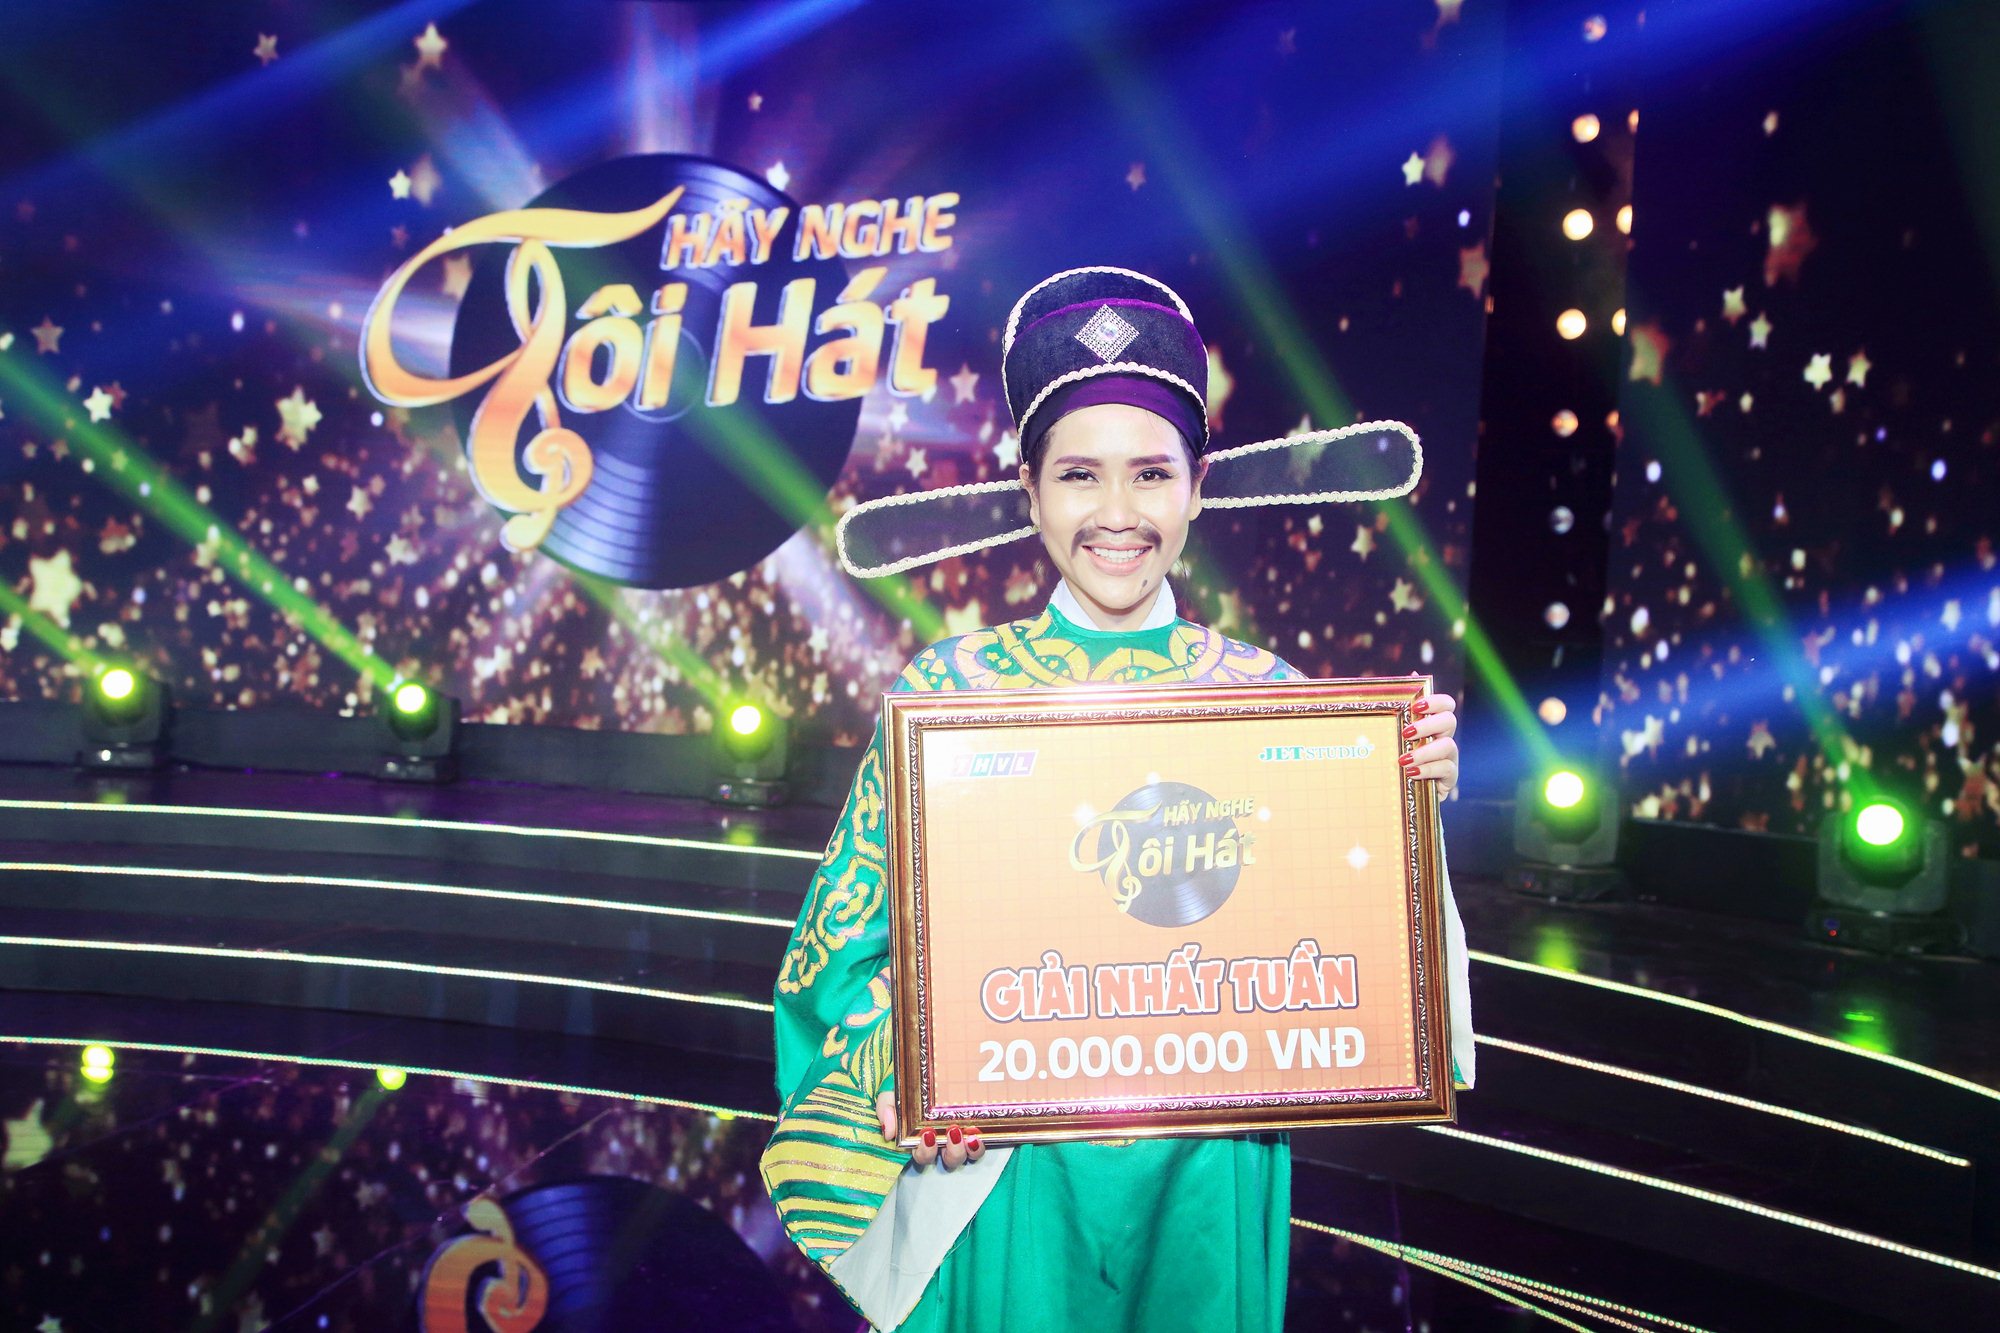 Nữ ca sĩ Hồng Mơ đã vượt qua các đối thủ nặng ký trong chương trình Hãy nghe tôi hát và giành giải nhất tuần thứ 3 với giải thưởng 20 triệu đồng.